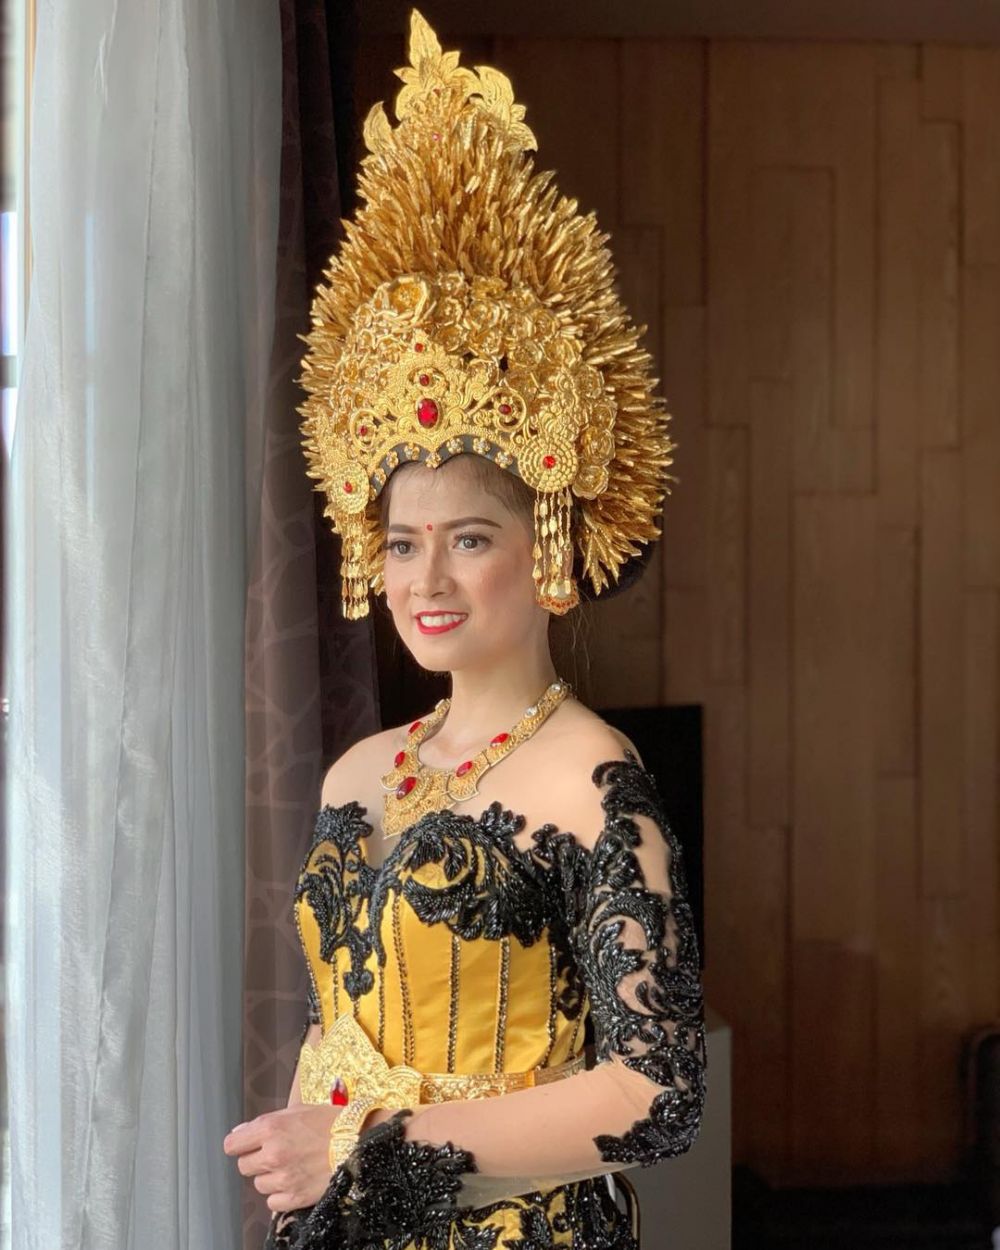 Fenomena Pernikahan Beda Kasta di Bali & Perawan Tua, Diskriminasikah?